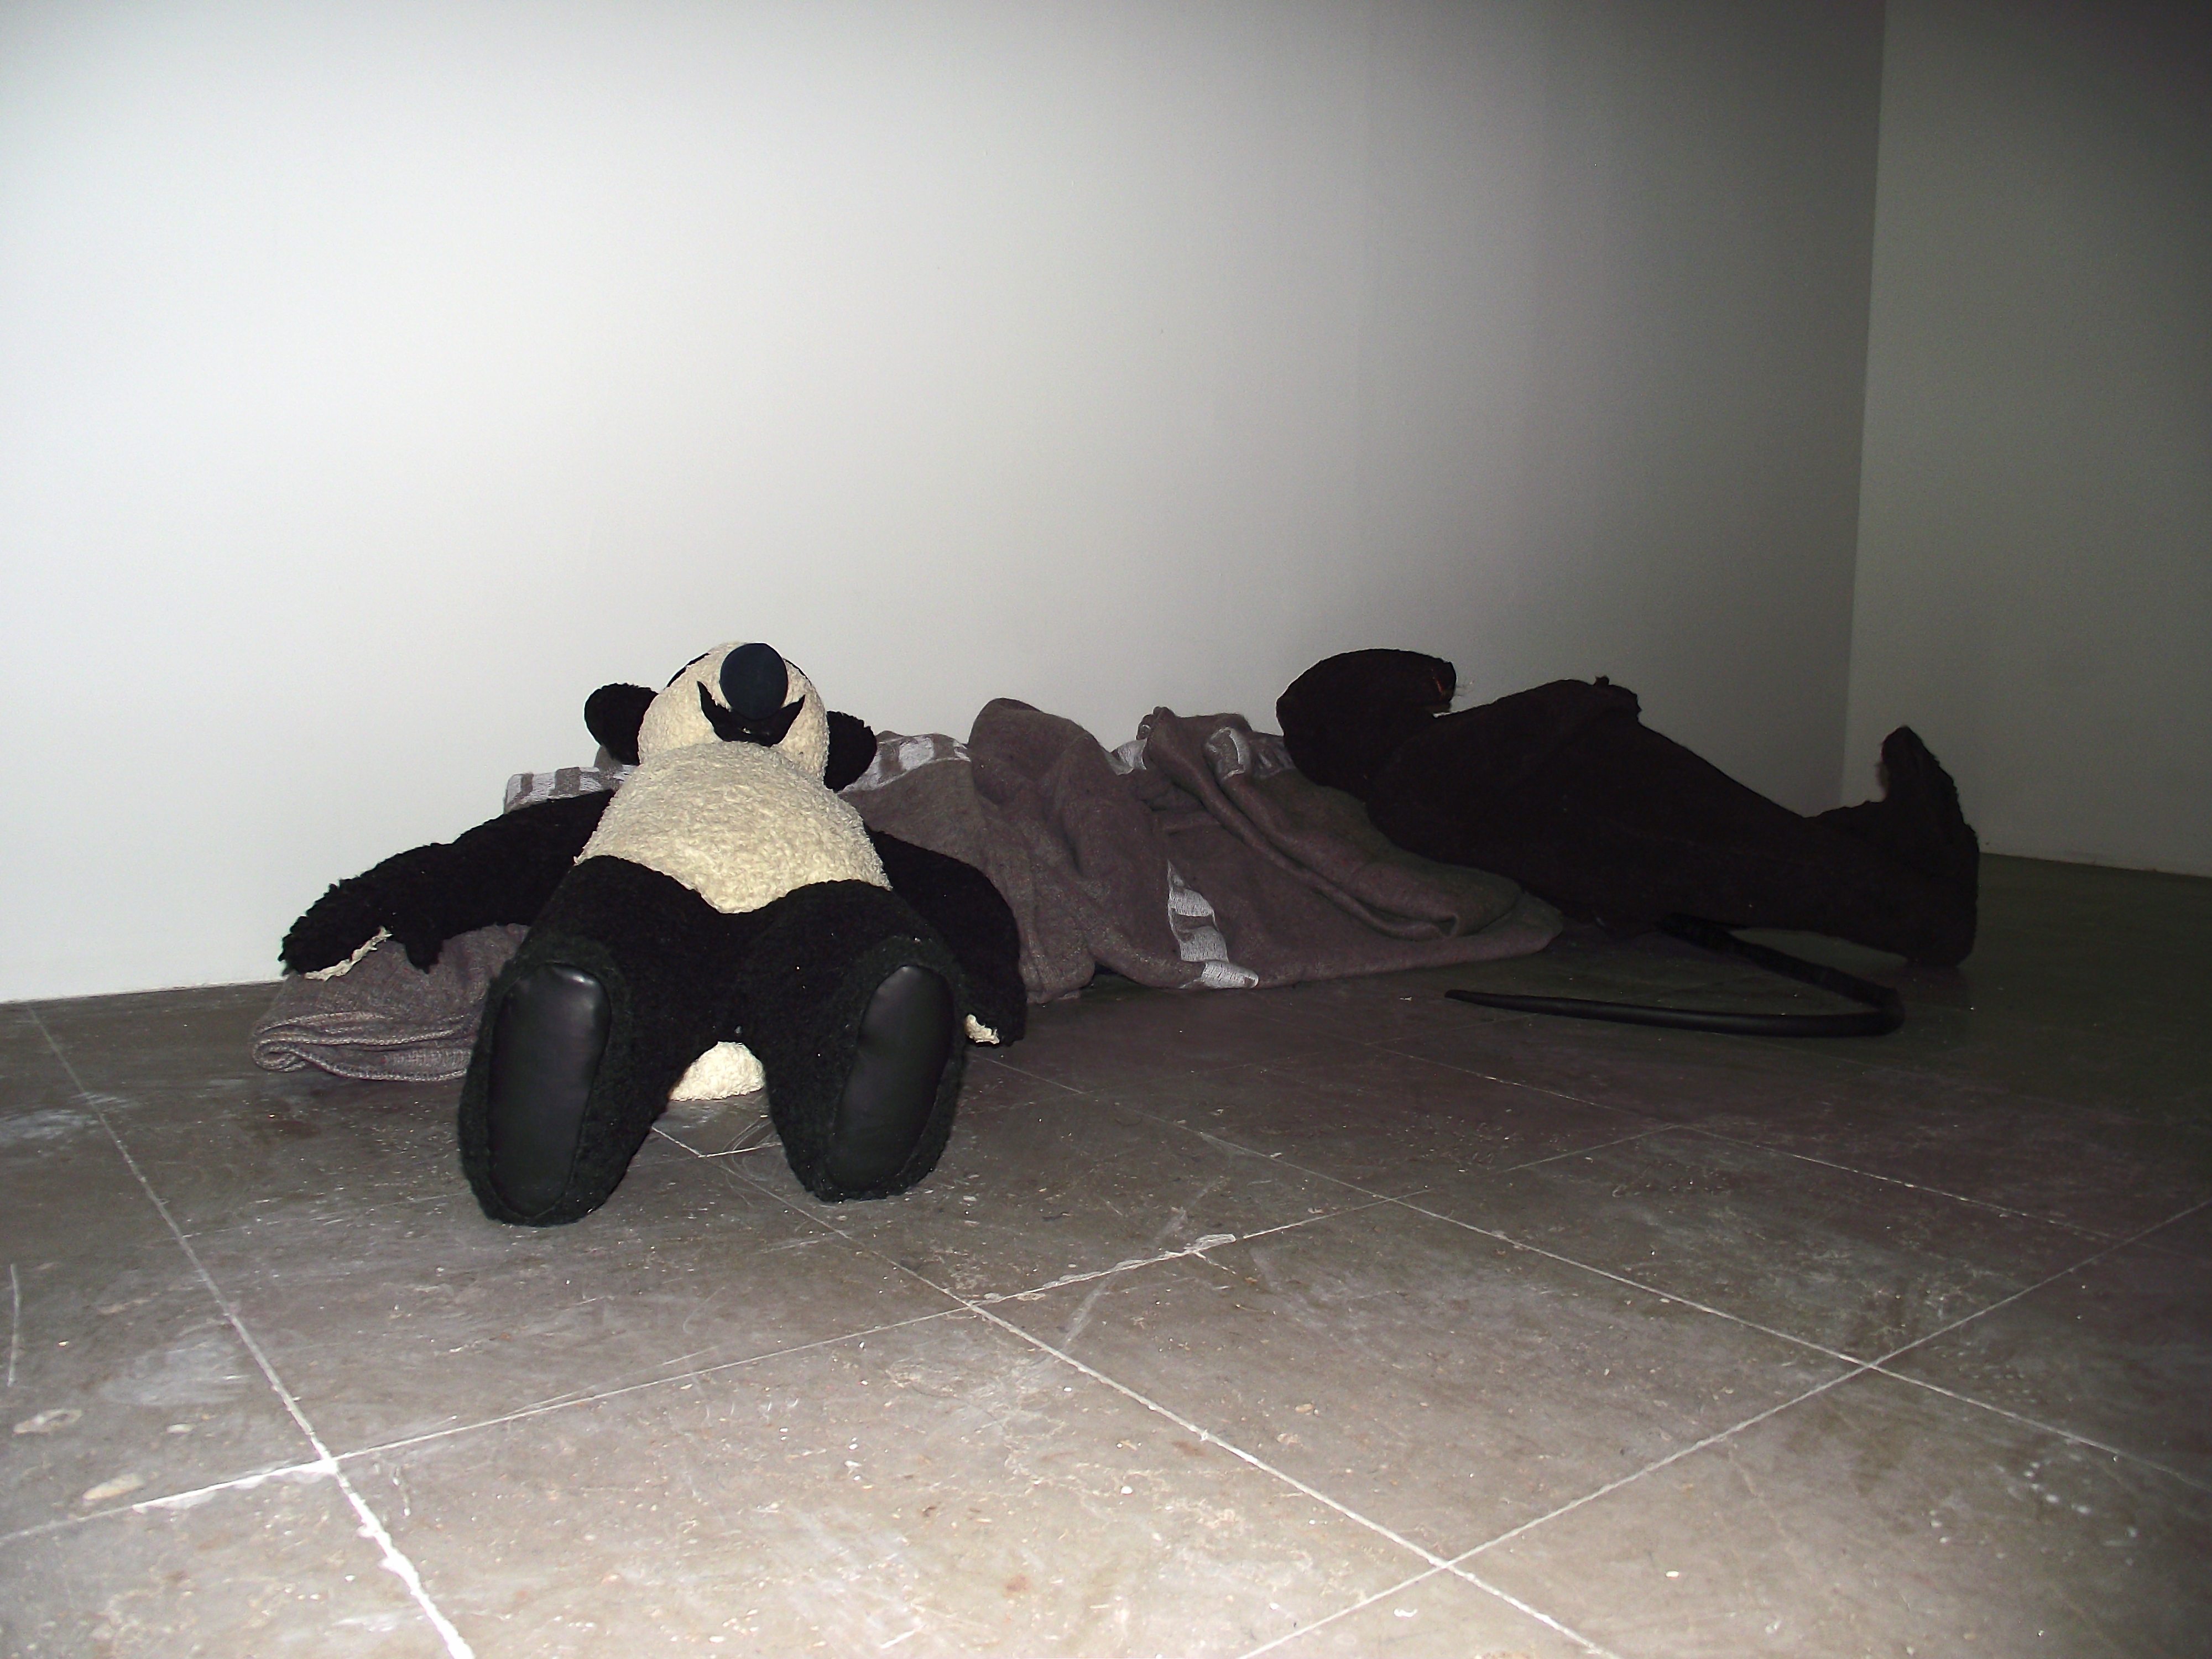 Oso Panda y Rata de Peter Fischli y David Weiss, foto de Óscar Alarcón para Neotraba